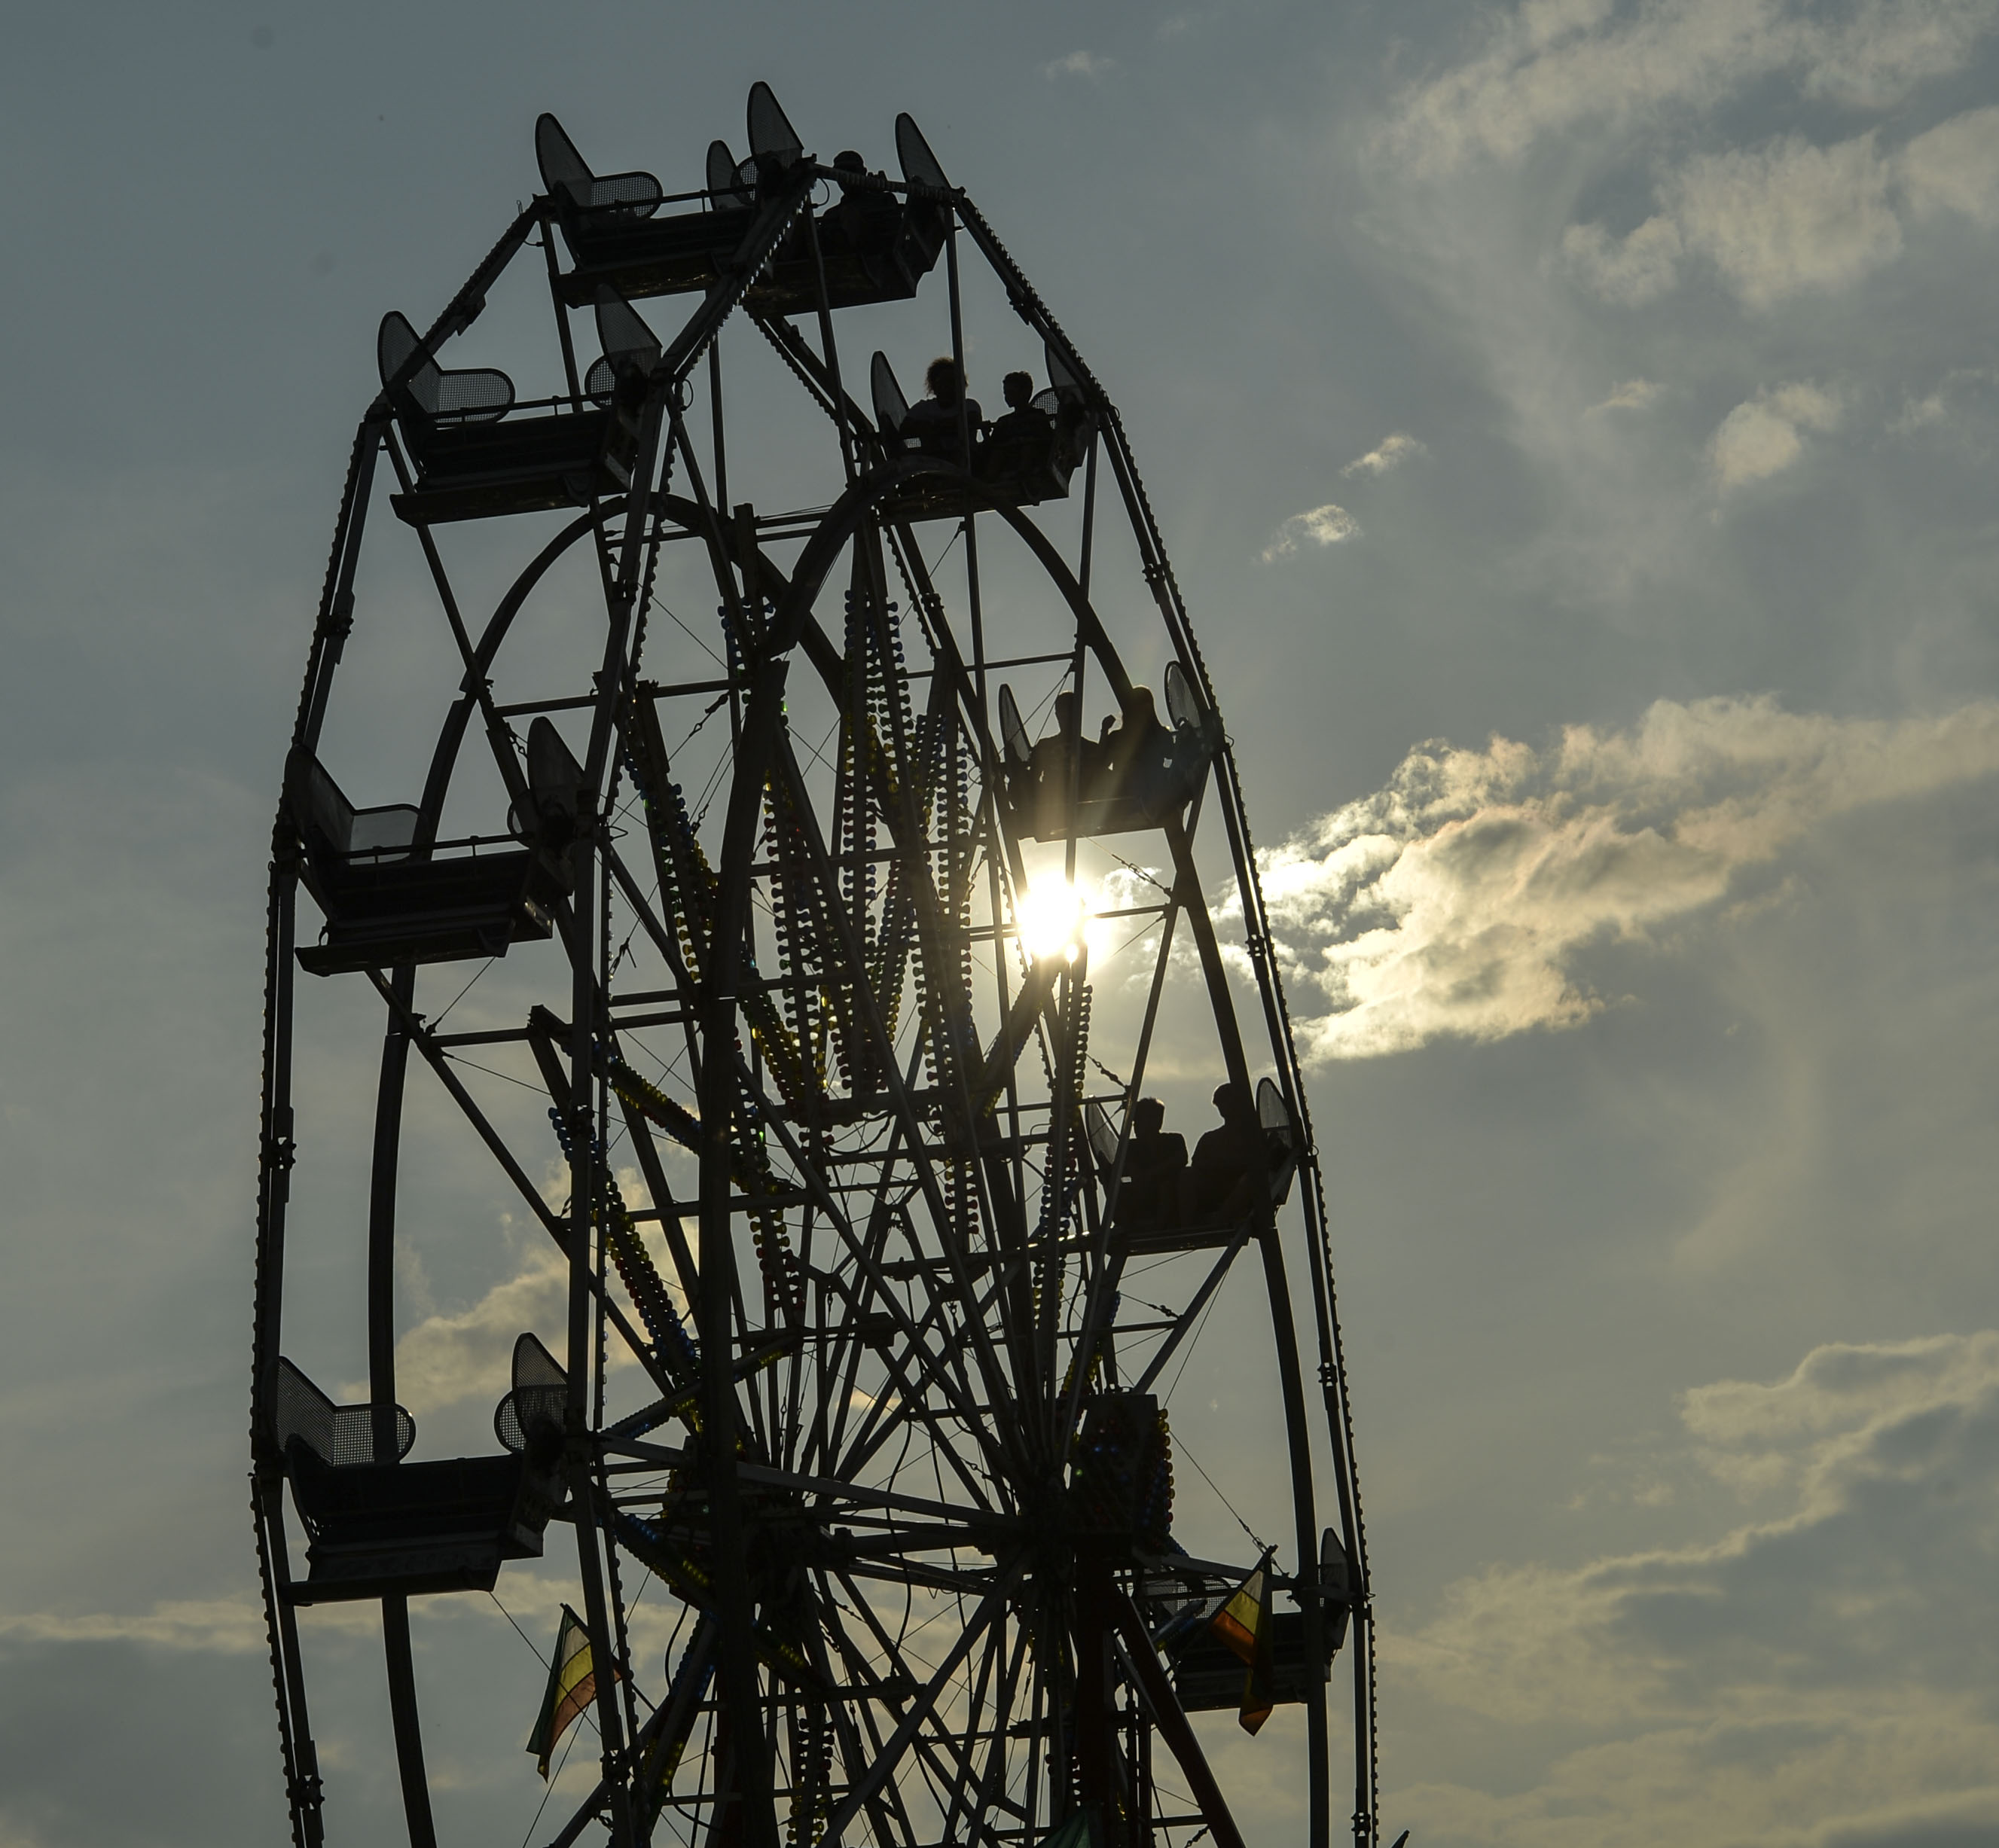 mon county fair ferris wheel